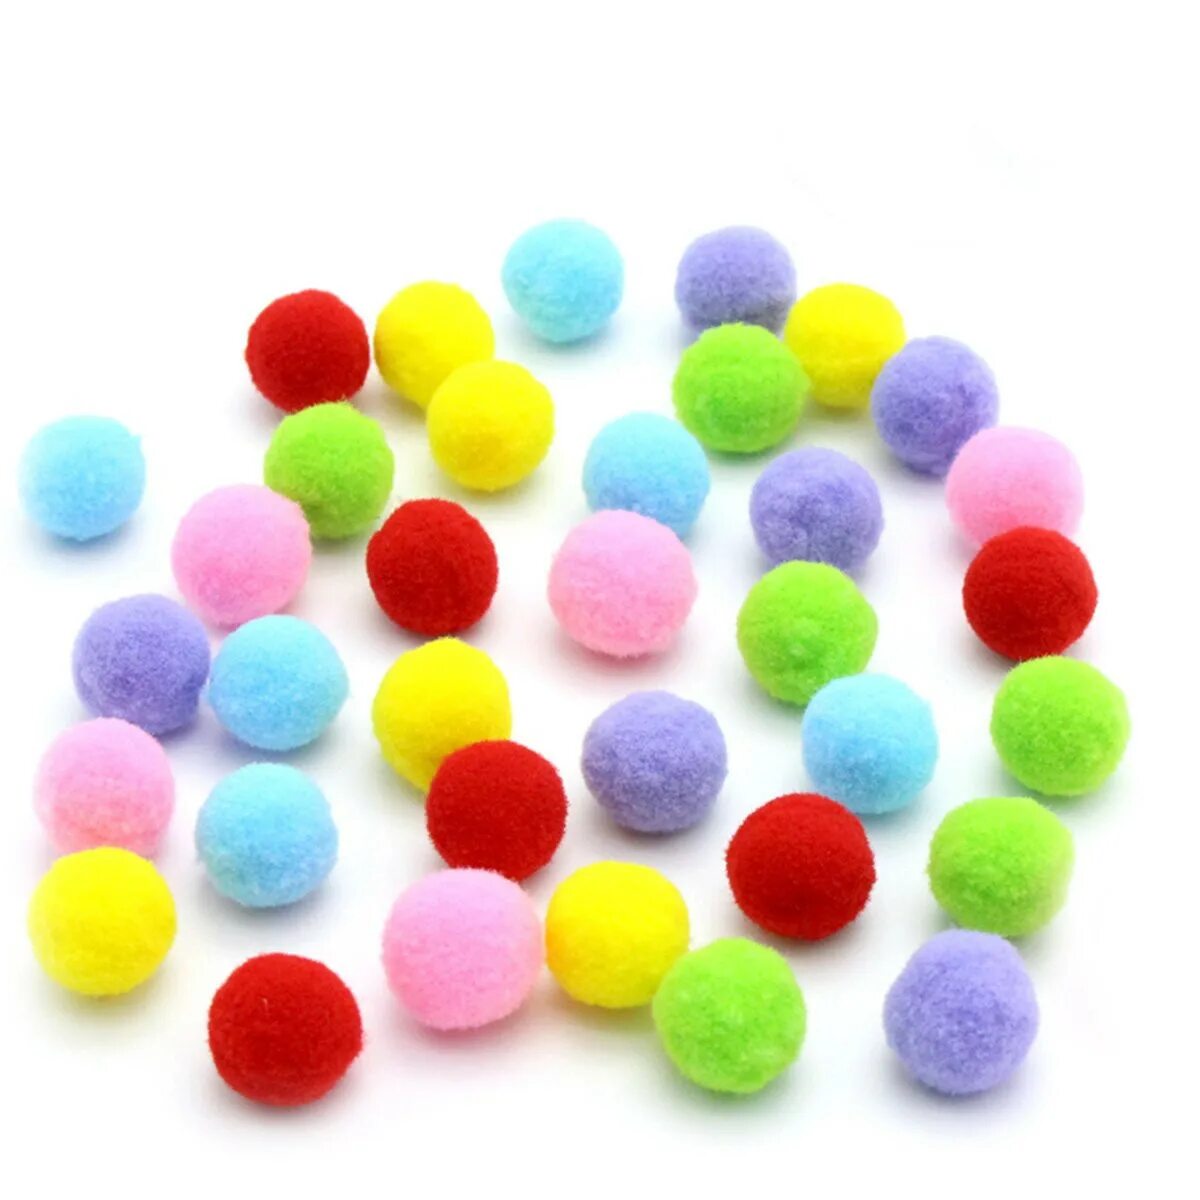 Мягкие шарики купить. Помпоны микс 10мм, 41шт. Разноцветные мягкие шарики. Мягкие шарики для поделок. Цветные помпоны.